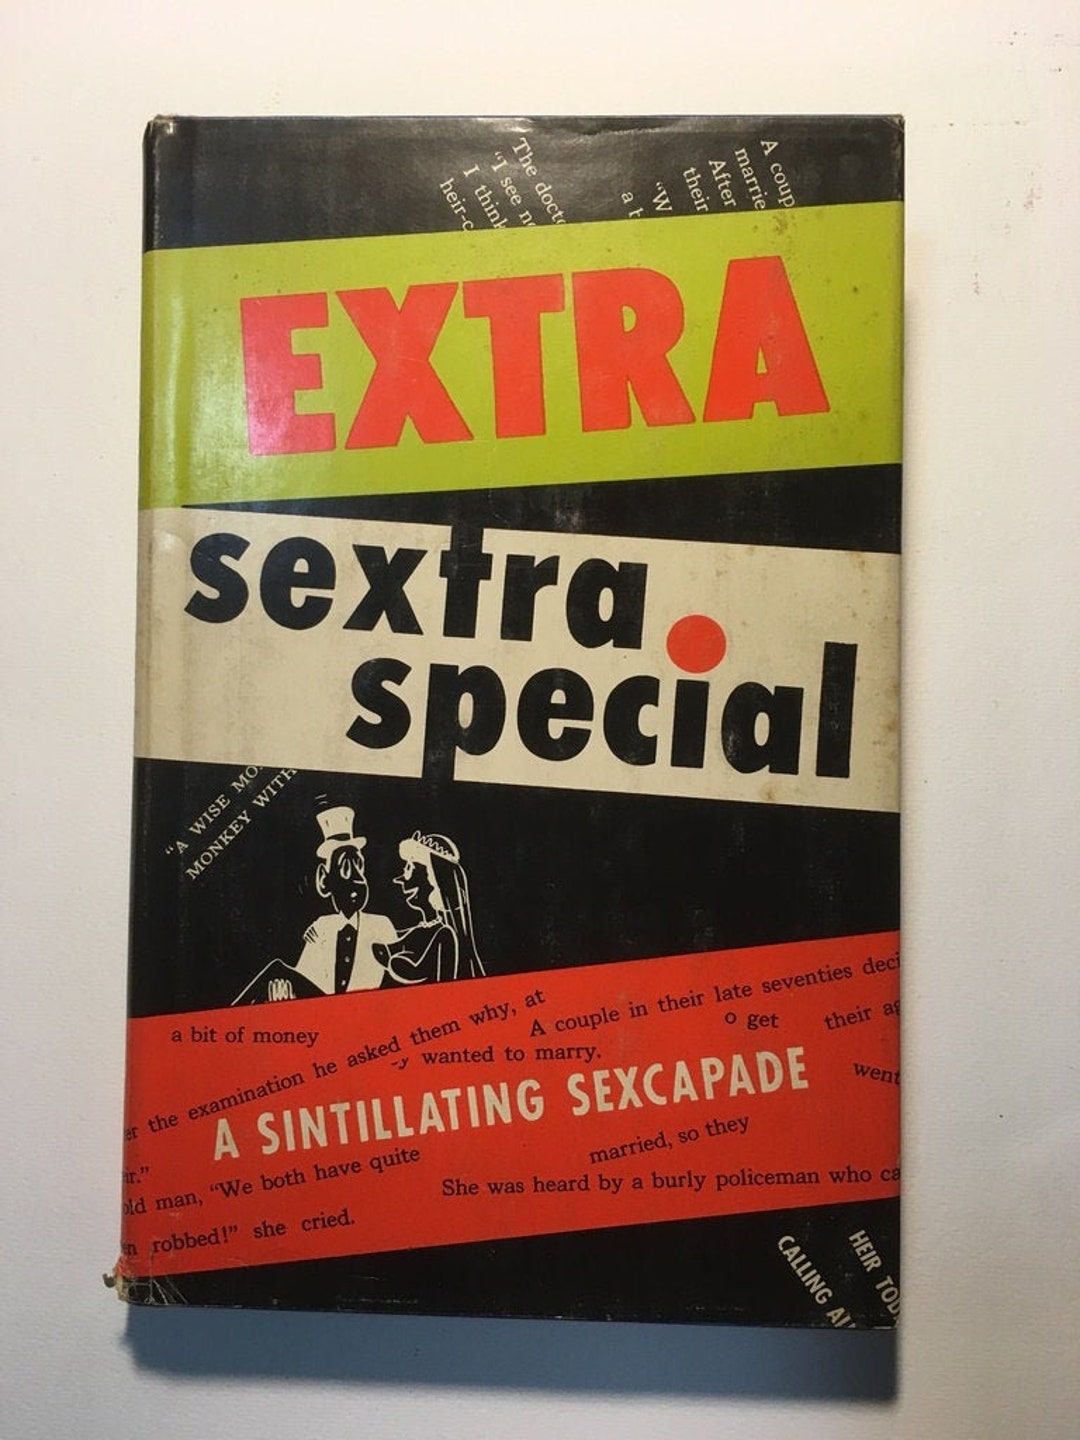 Extra Sextra Special A Sintillating Sexcapade Scylla